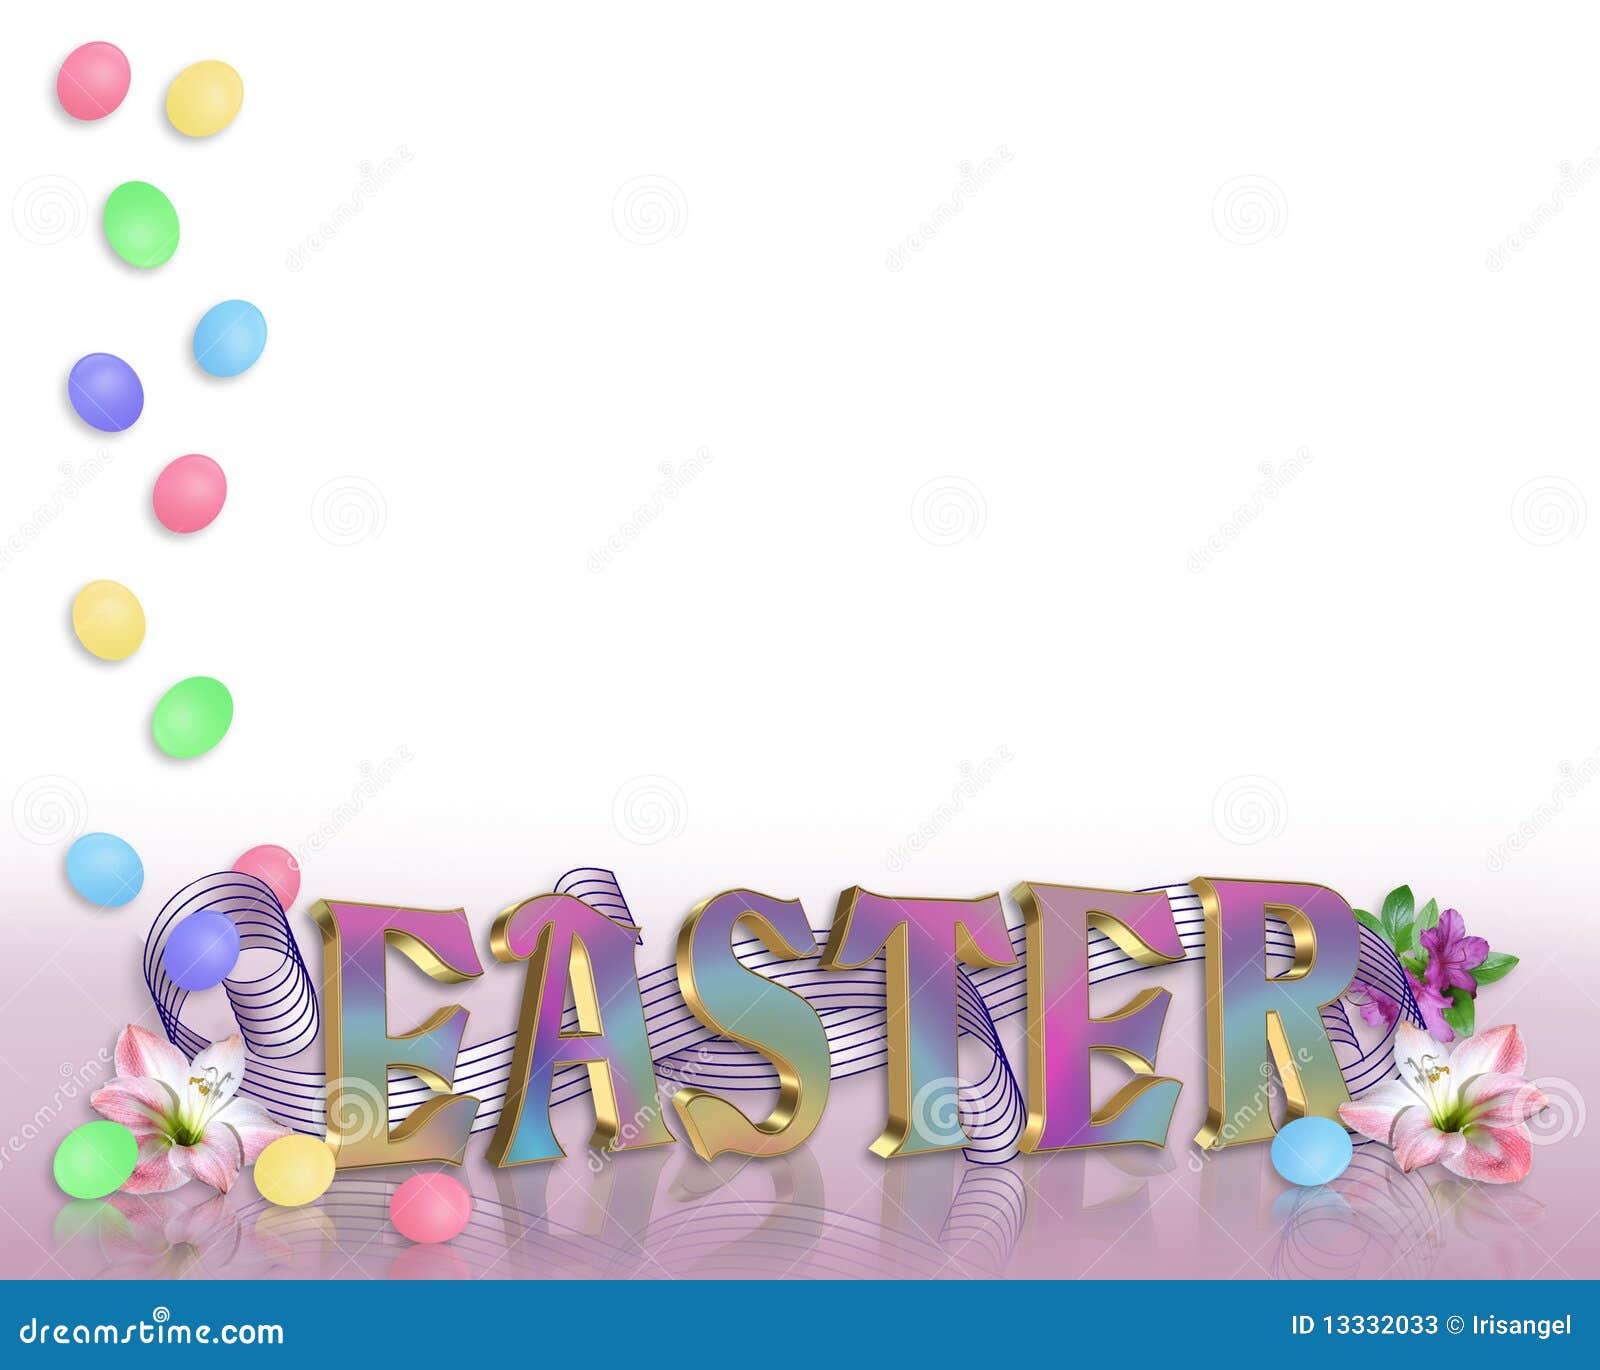 Il bordo di Pasqua eggs, fiorisce il testo 3D. Bordo illustrato delle uova di Pasqua Per la cartolina d'auguri, la cancelleria o la priorità bassa di festa con lo spazio della copia, testo 3D